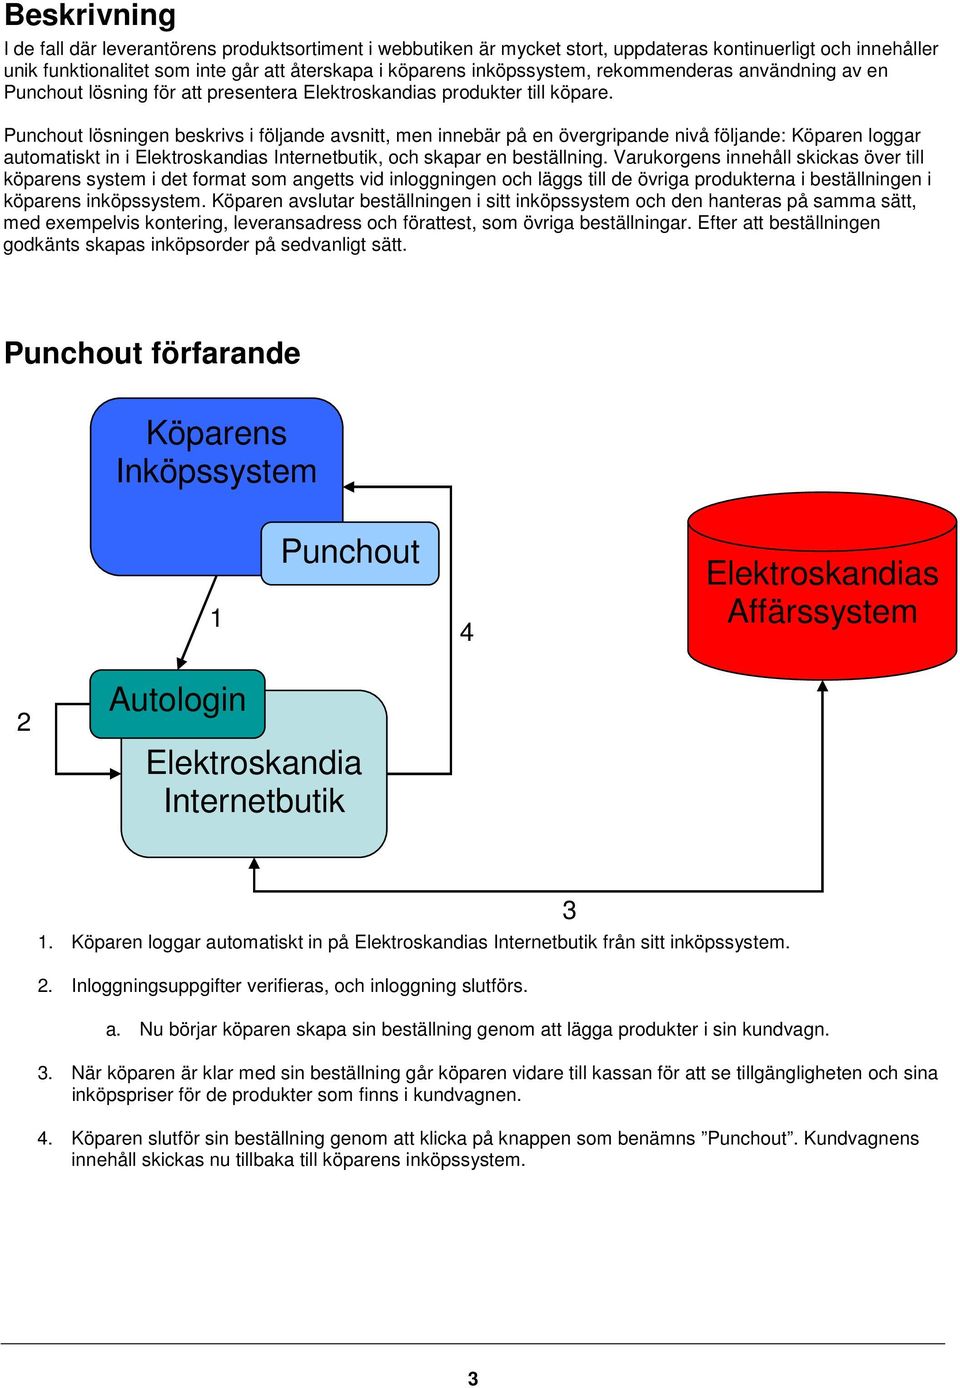 Punchout lösningen beskrivs i följande avsnitt, men innebär på en övergripande nivå följande: Köparen loggar automatiskt in i Elektroskandias Internetbutik, och skapar en beställning.